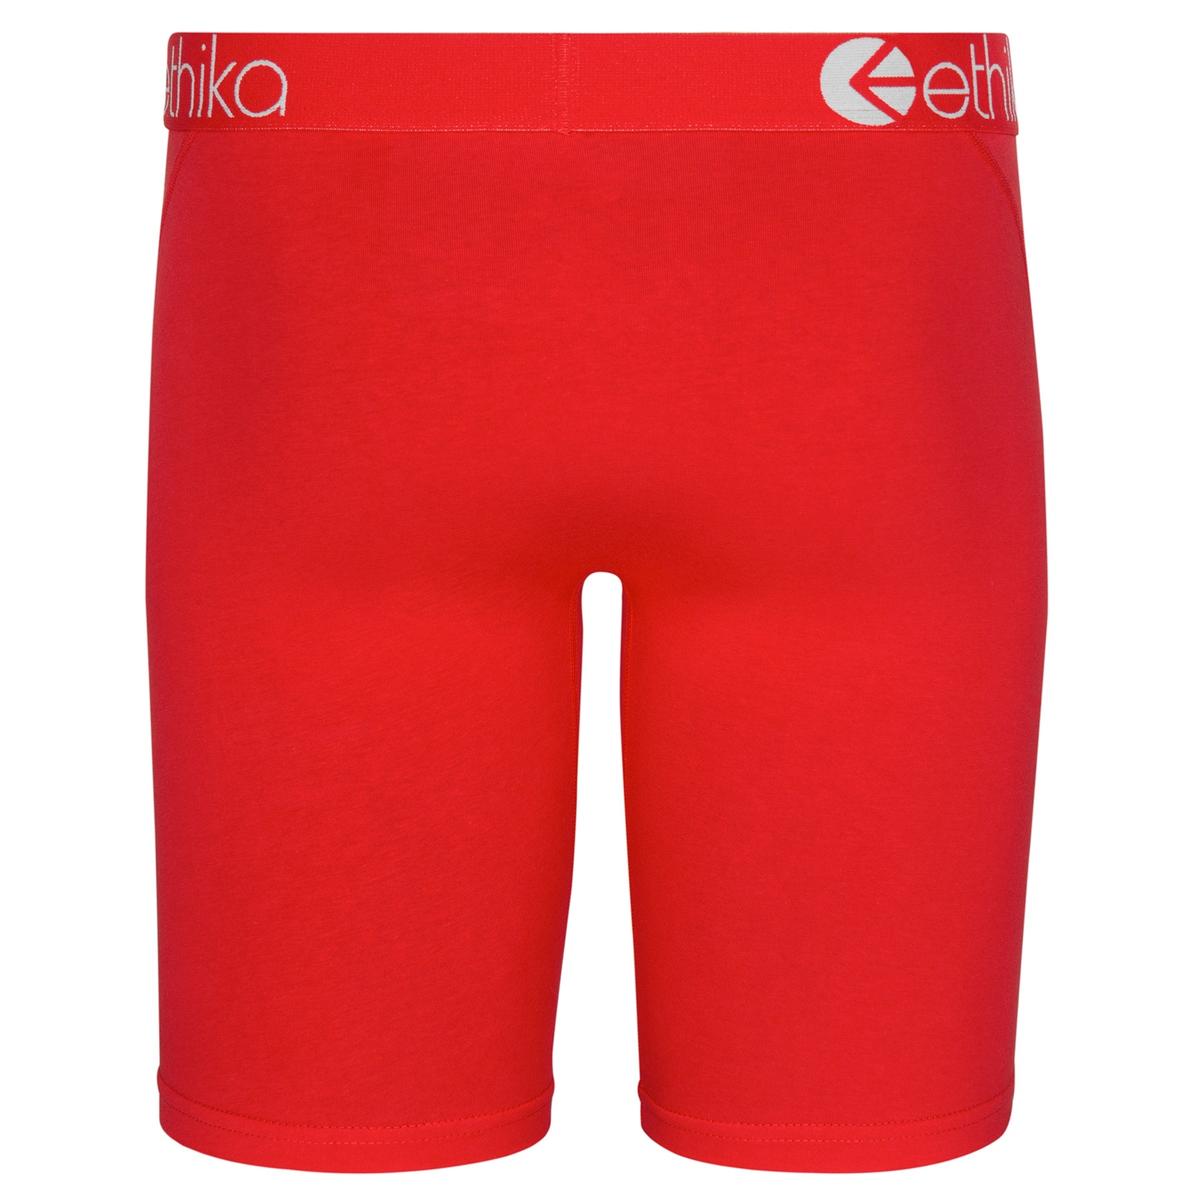 Ethika Underwear Wholesalemen's Polyester Boxer Shorts 10-pack - Soft  Underwear 2xl-4xl